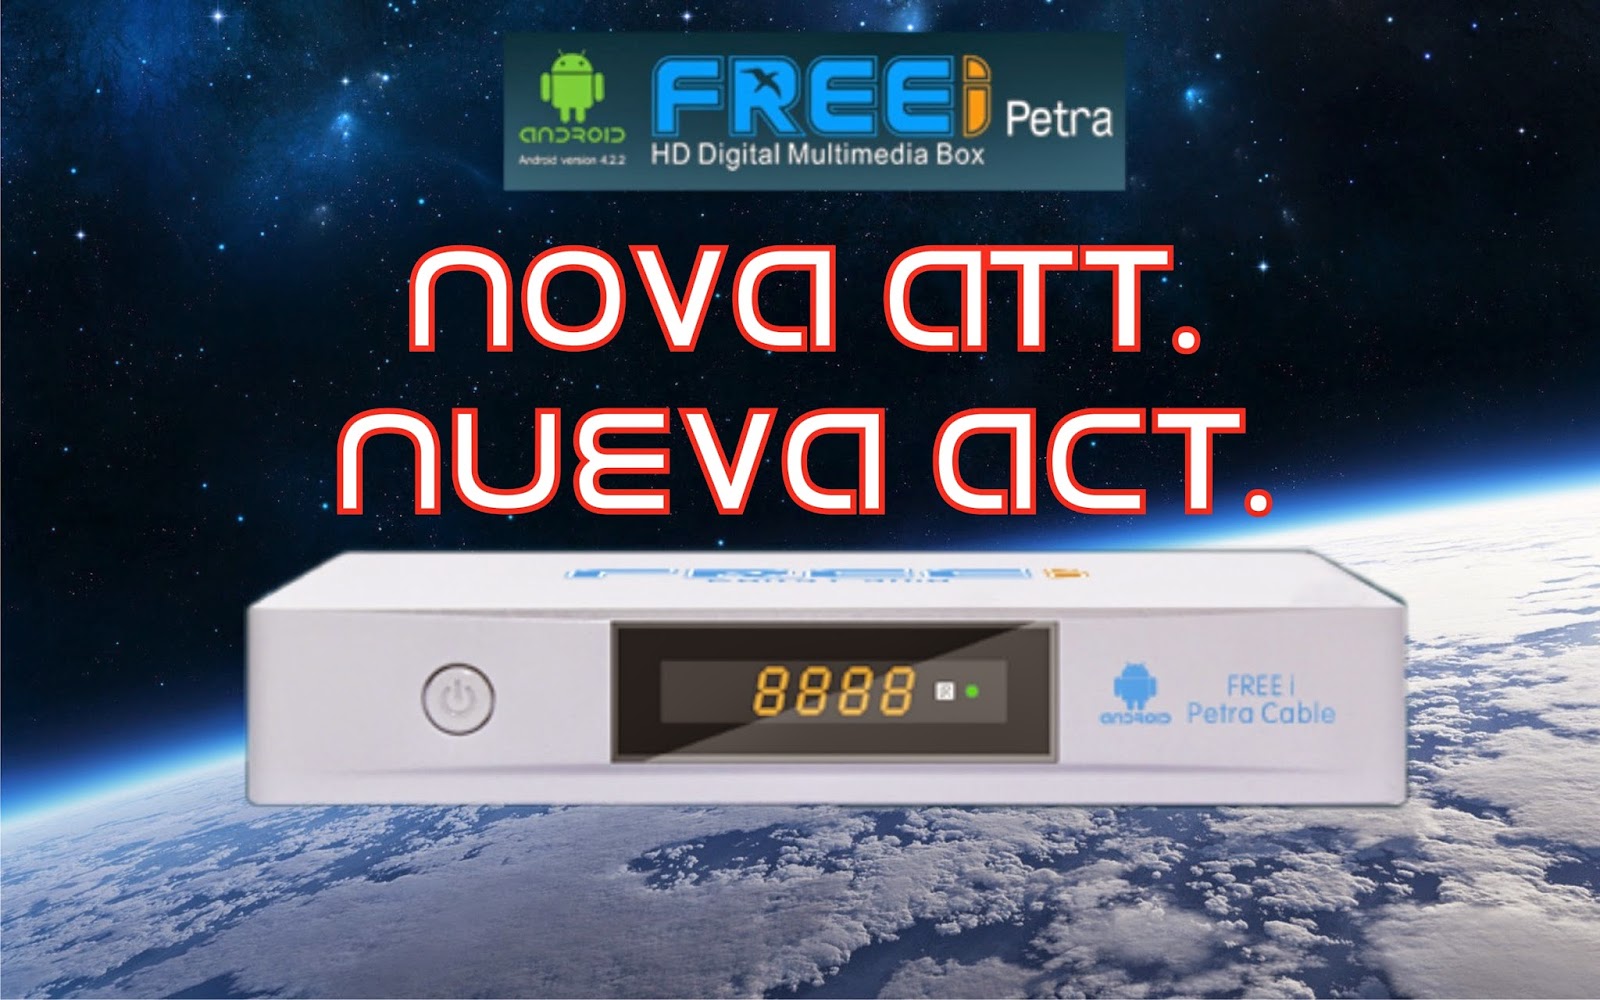 Atualização Freei Petra Cablo V1.0.0.93